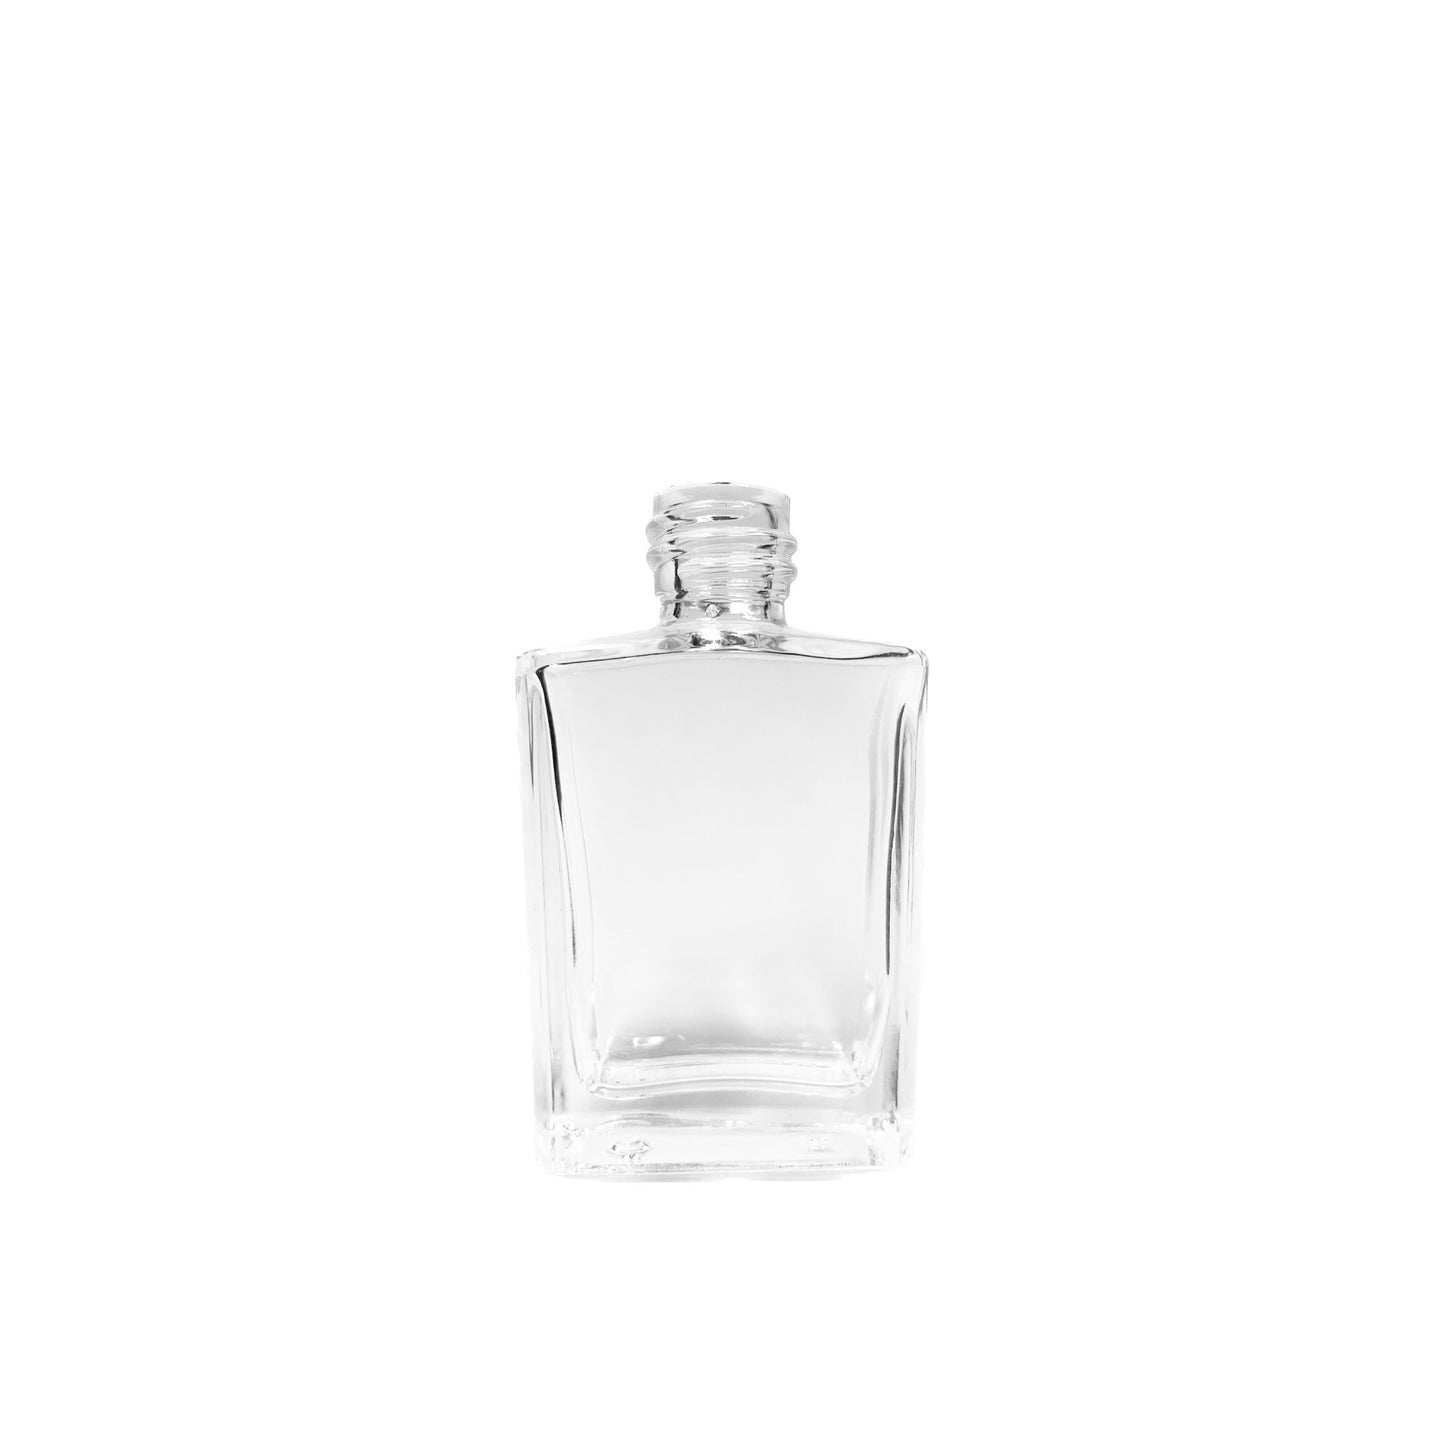 30 ml Clear Glass Rectangular Serum Bottle